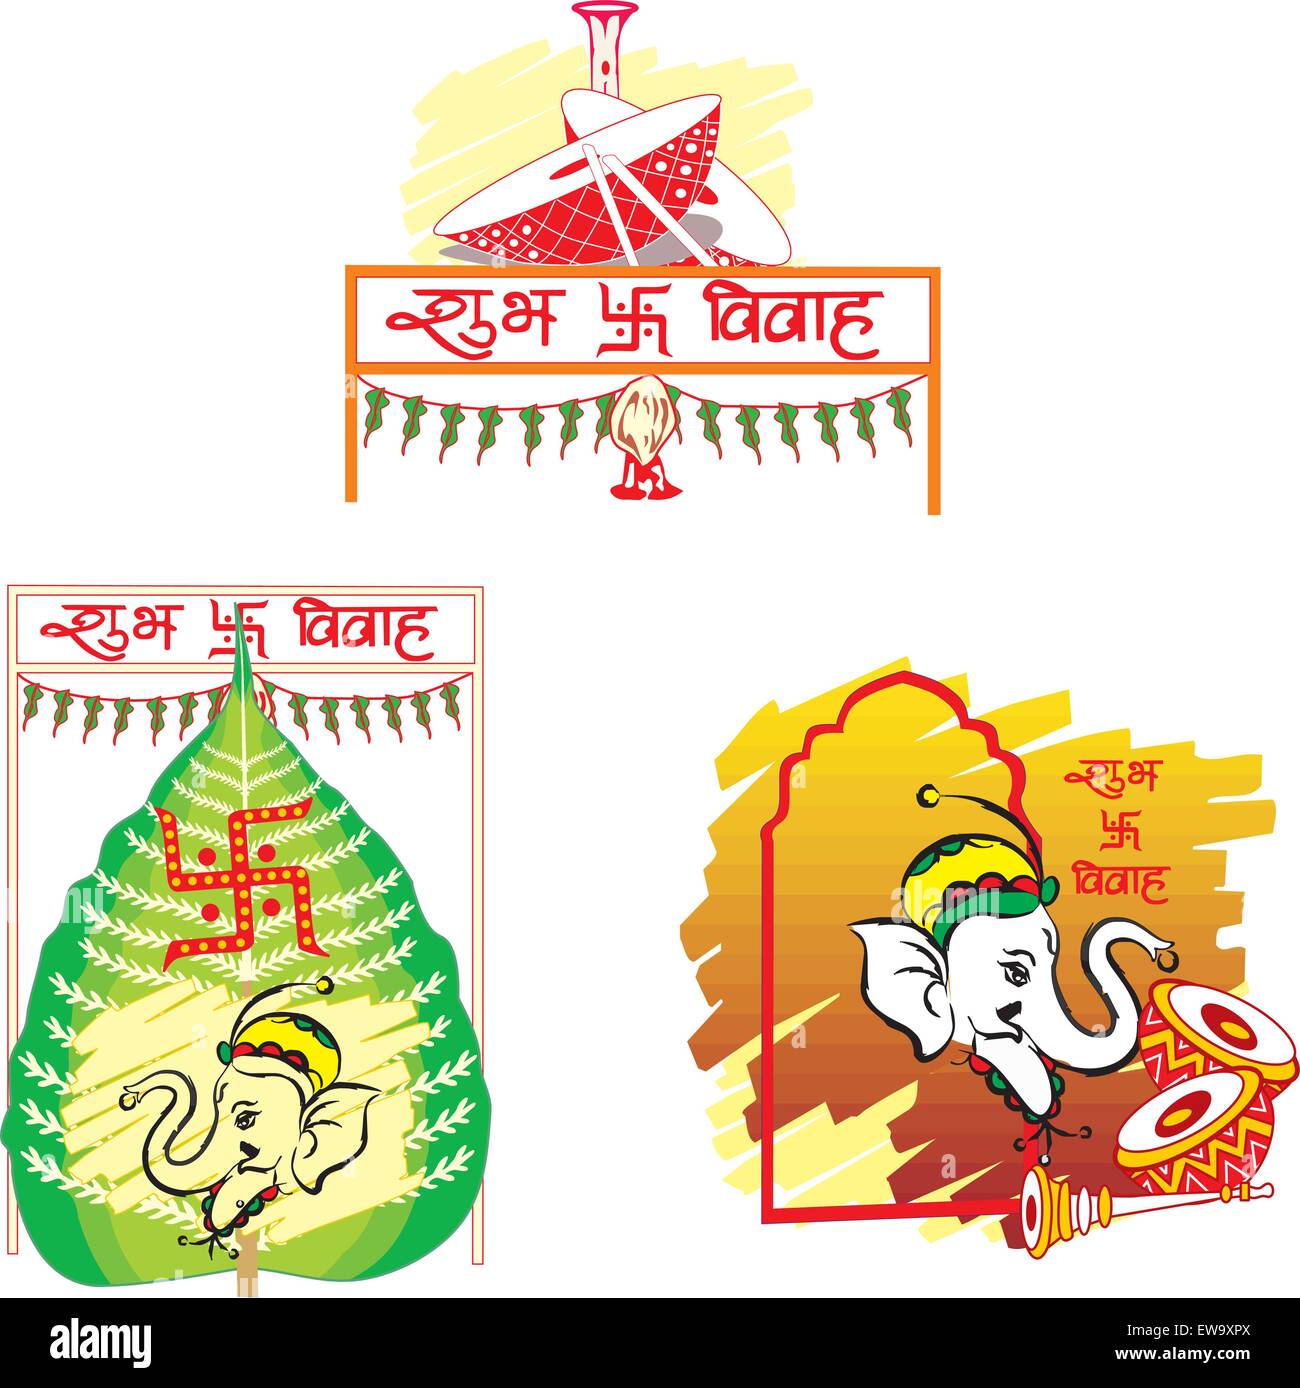 Shubh Vivah, matrimonio indiano, la foglia di Betel simboleggia la prosperità, l'Elefante simboleggia la sapienza, Dhol simboleggia i tamburi di Fes Illustrazione Vettoriale